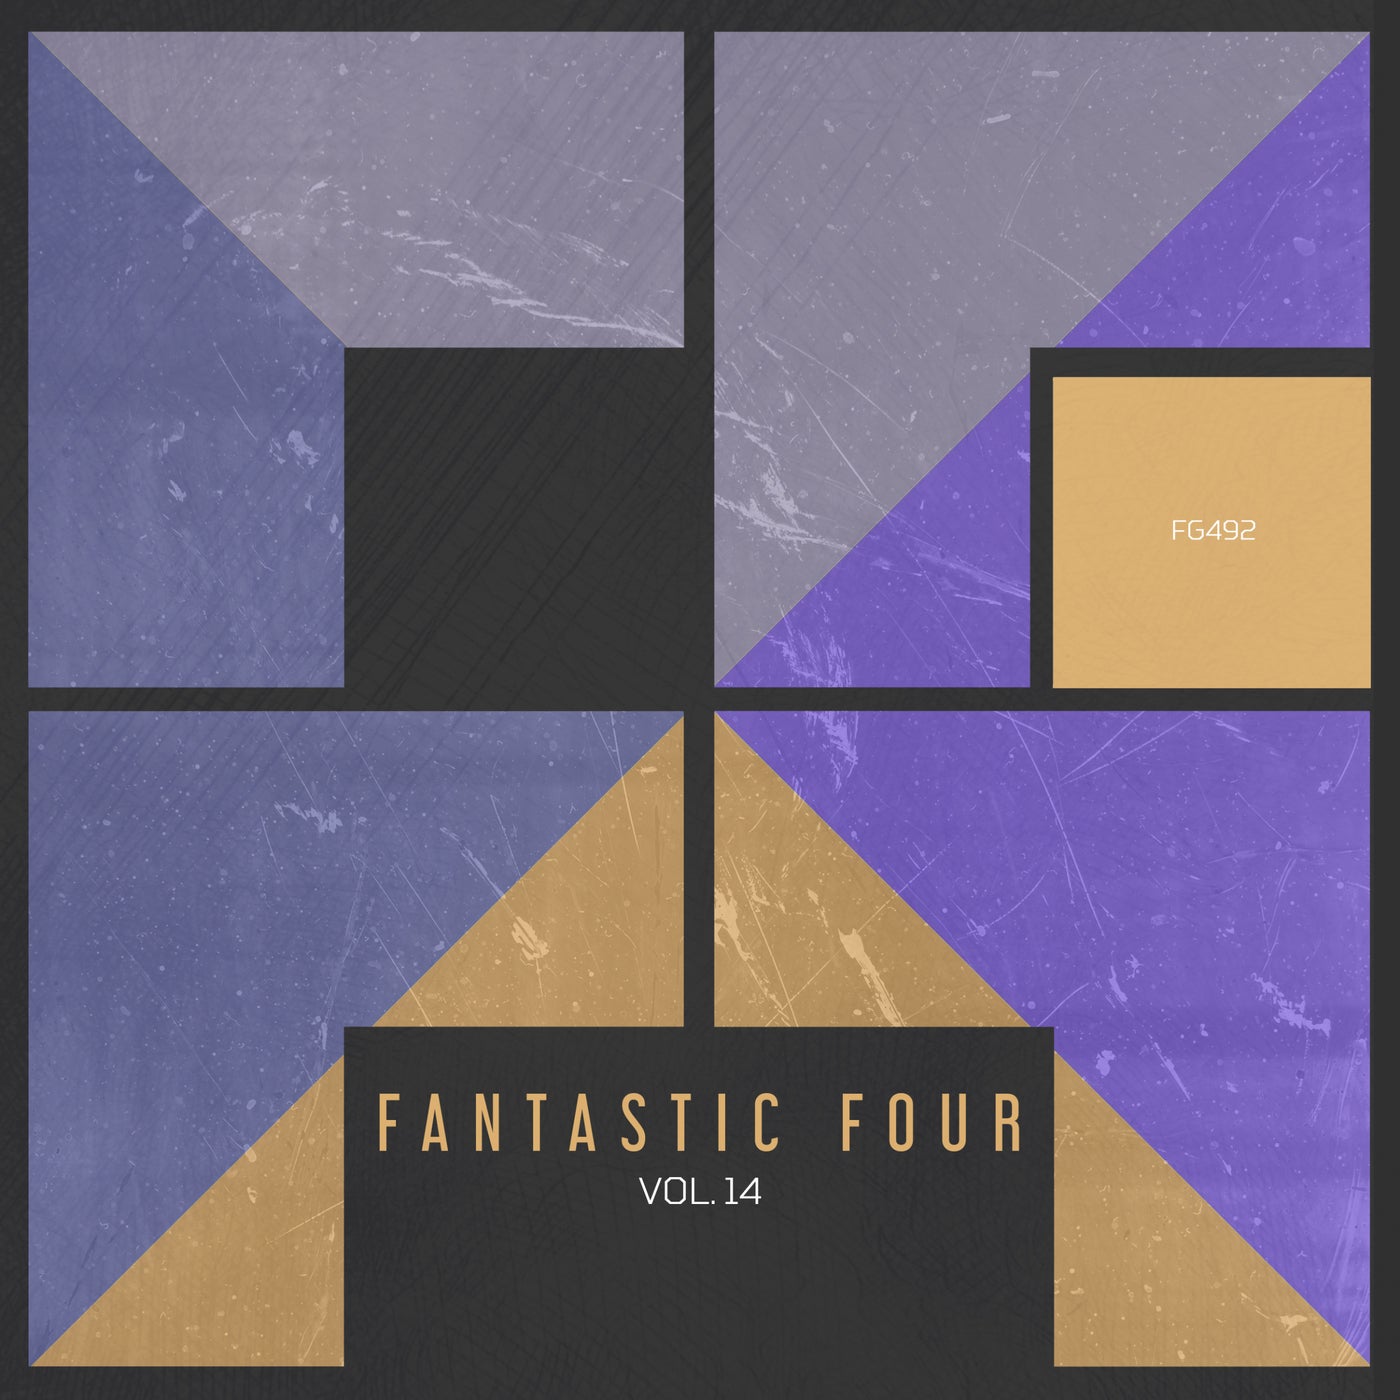 Fantastic Four vol.14